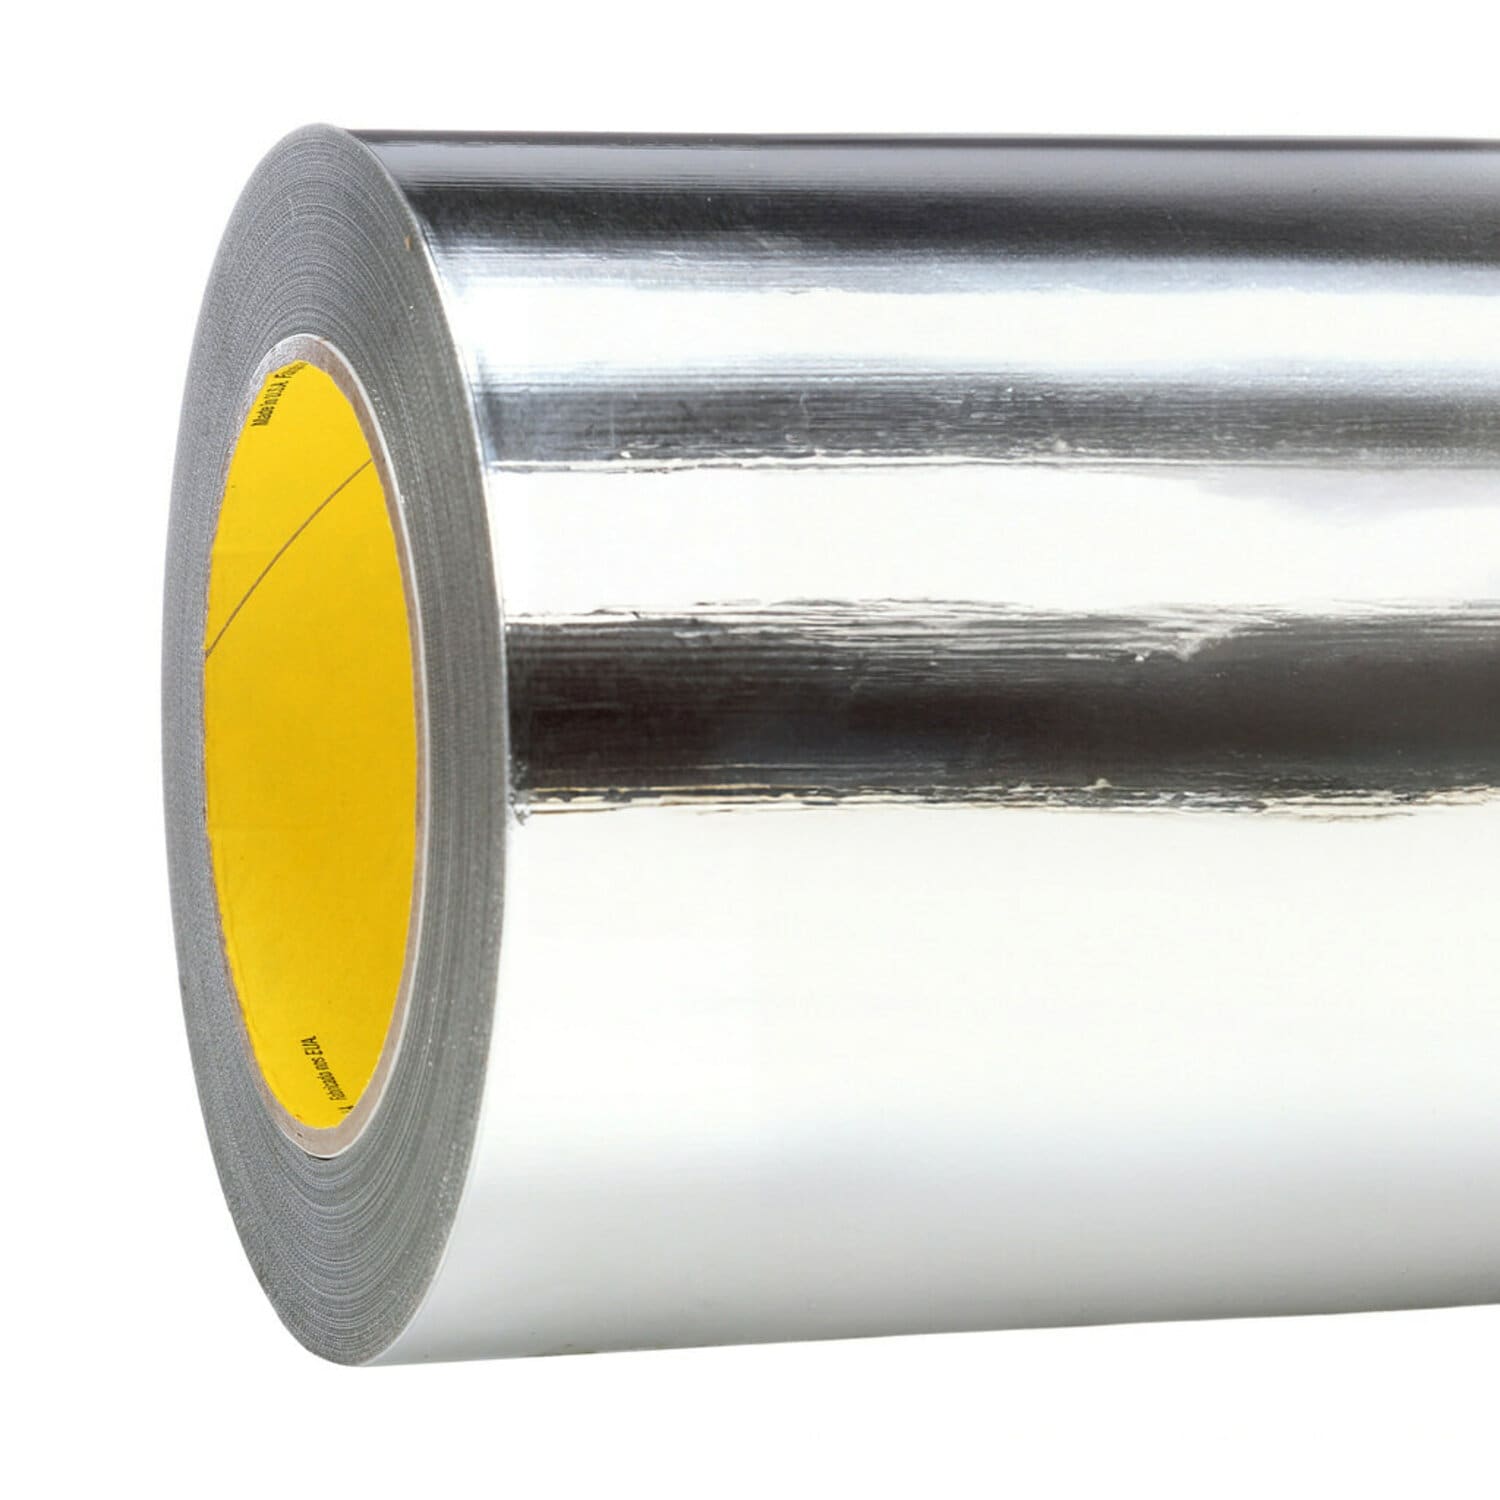 7000049042 - 3M High Temperature Aluminum Foil Tape 433L, Silver, 23 in x 60 yd, 3.5
mil, 1 roll per case